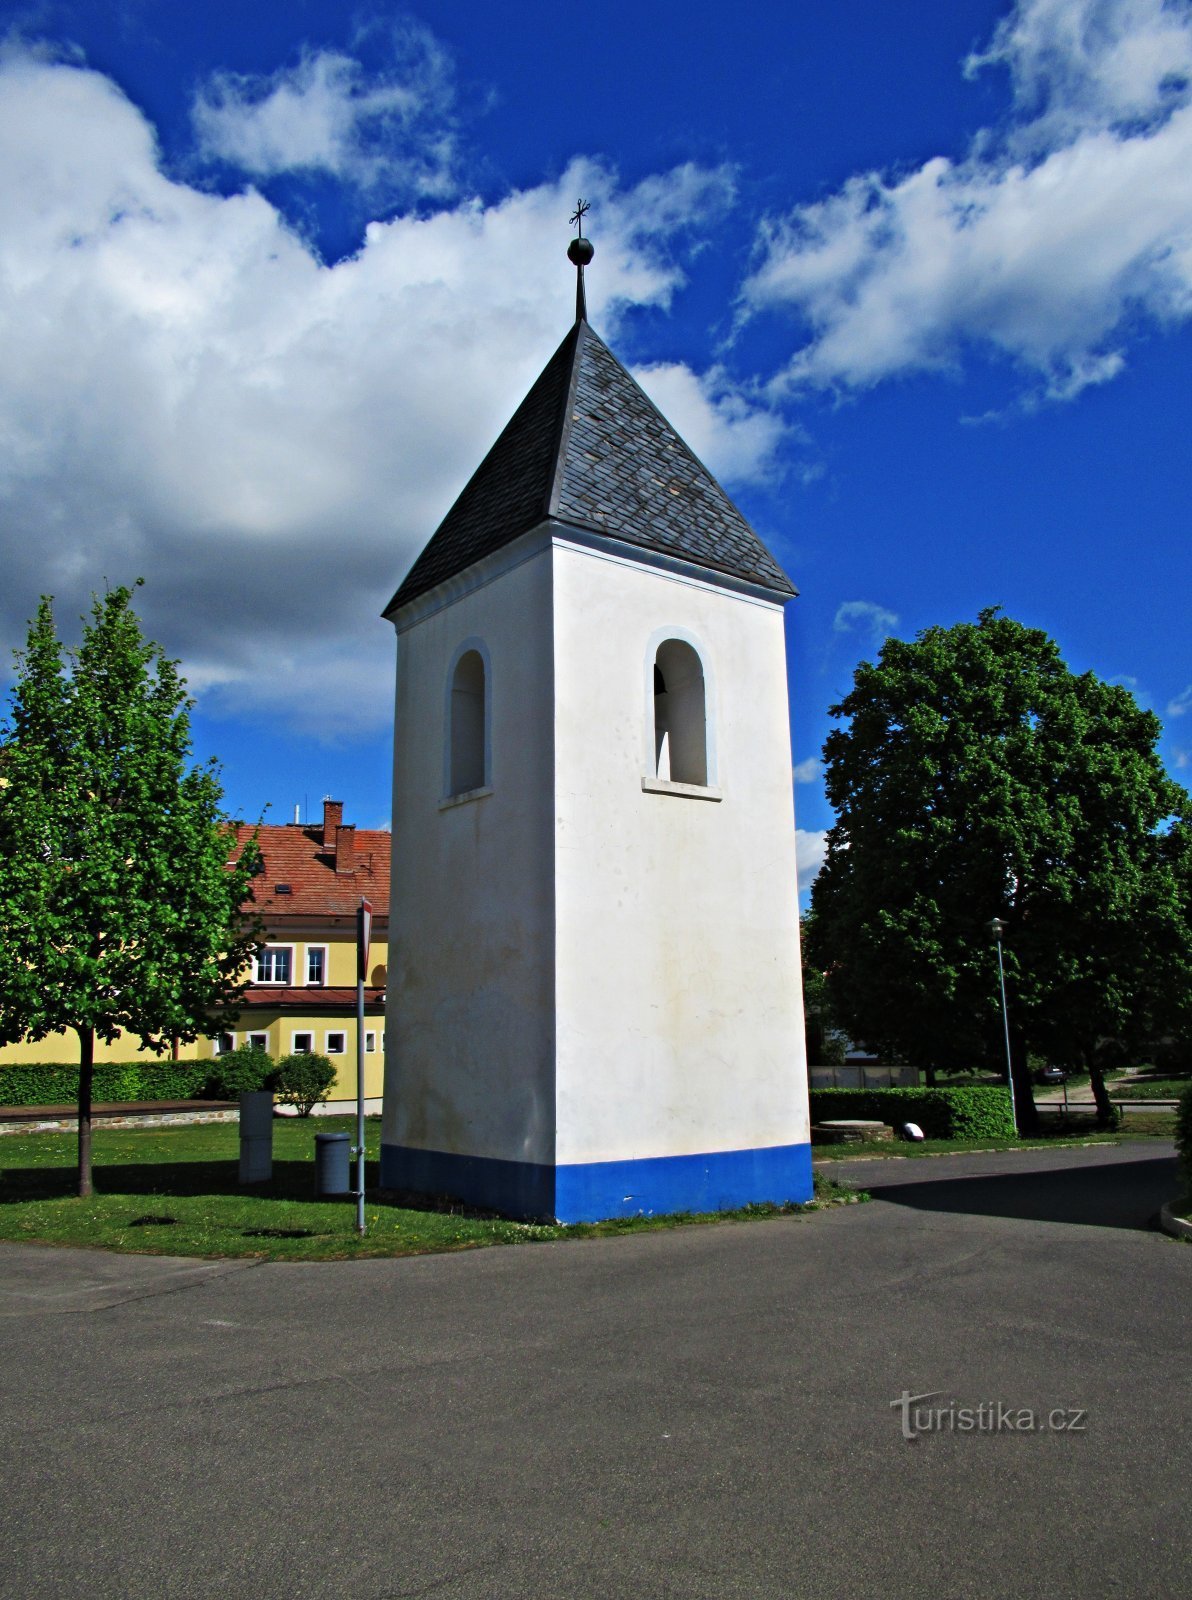 Bell tower in Hrubá Vrbka